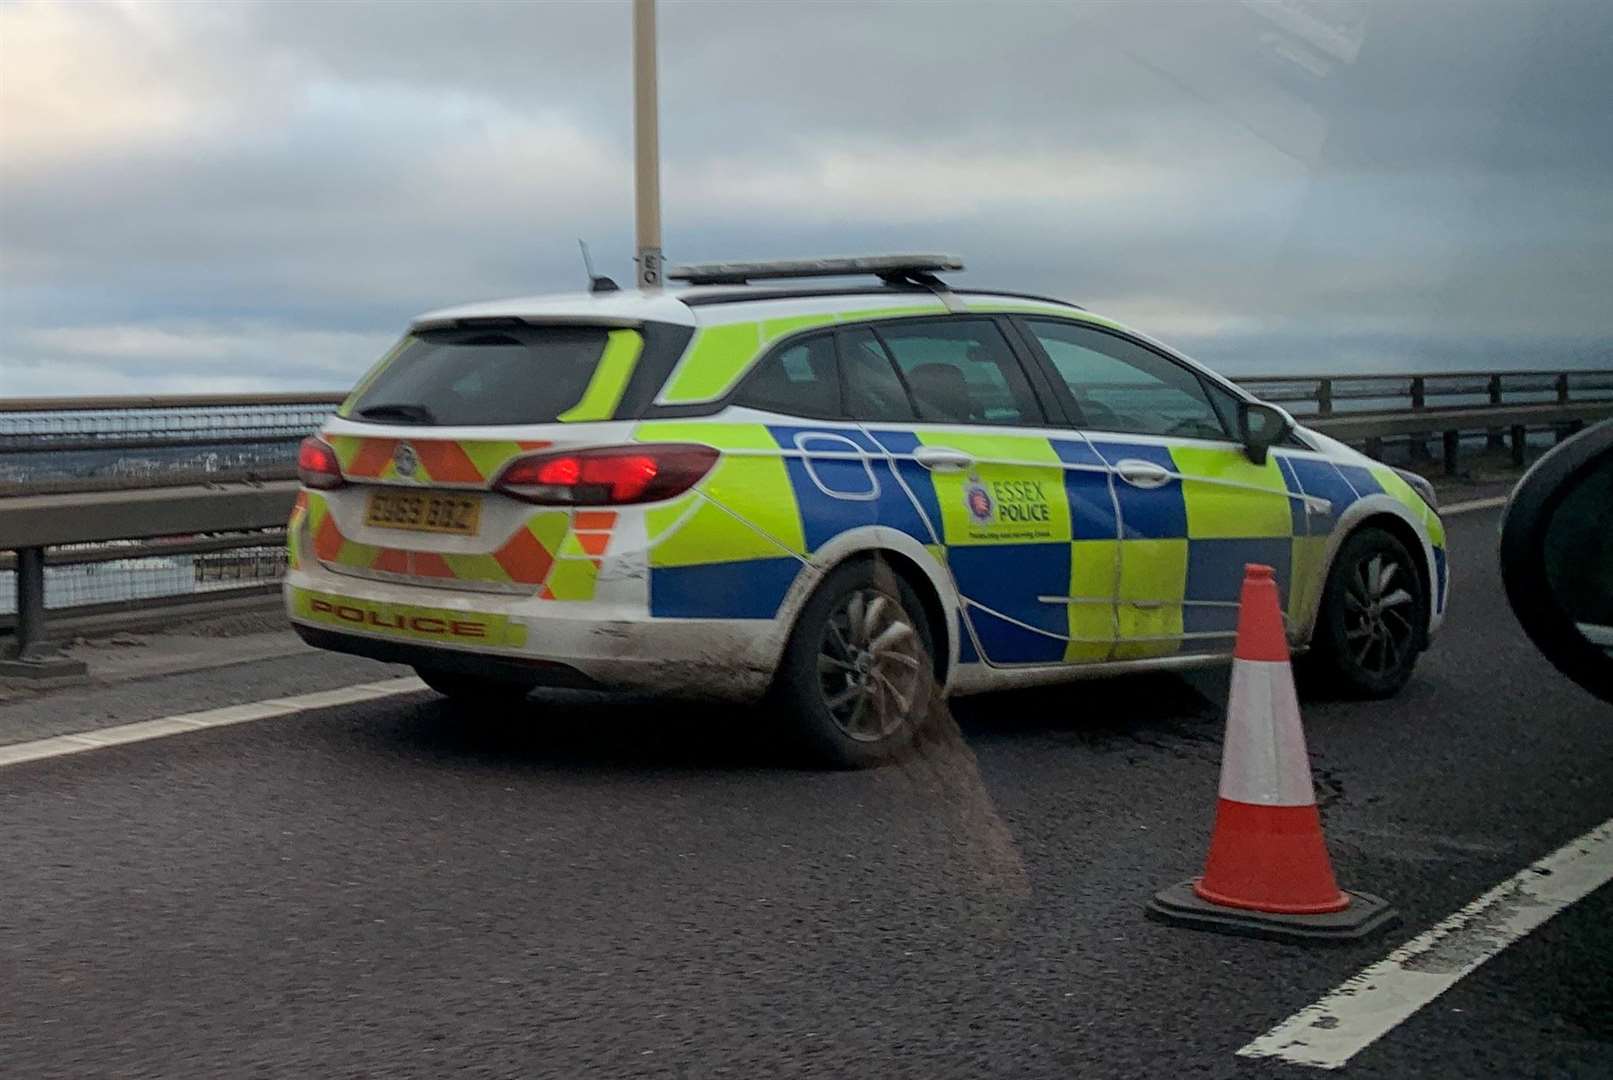 Police on the Dartford Bridge